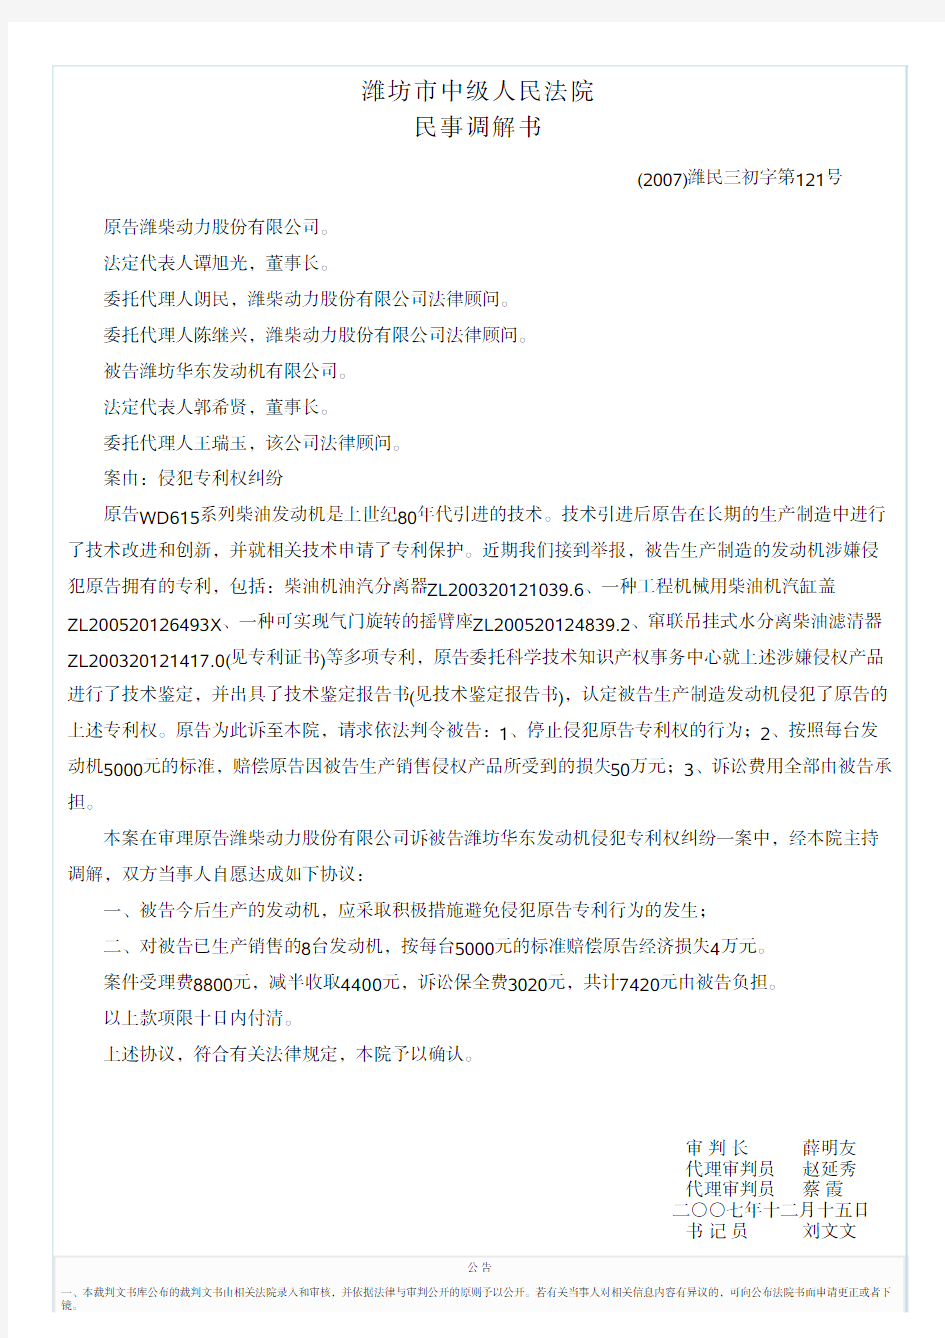 潍柴动力股份有限公司诉被告潍坊华东发动机有限公司侵犯专利权